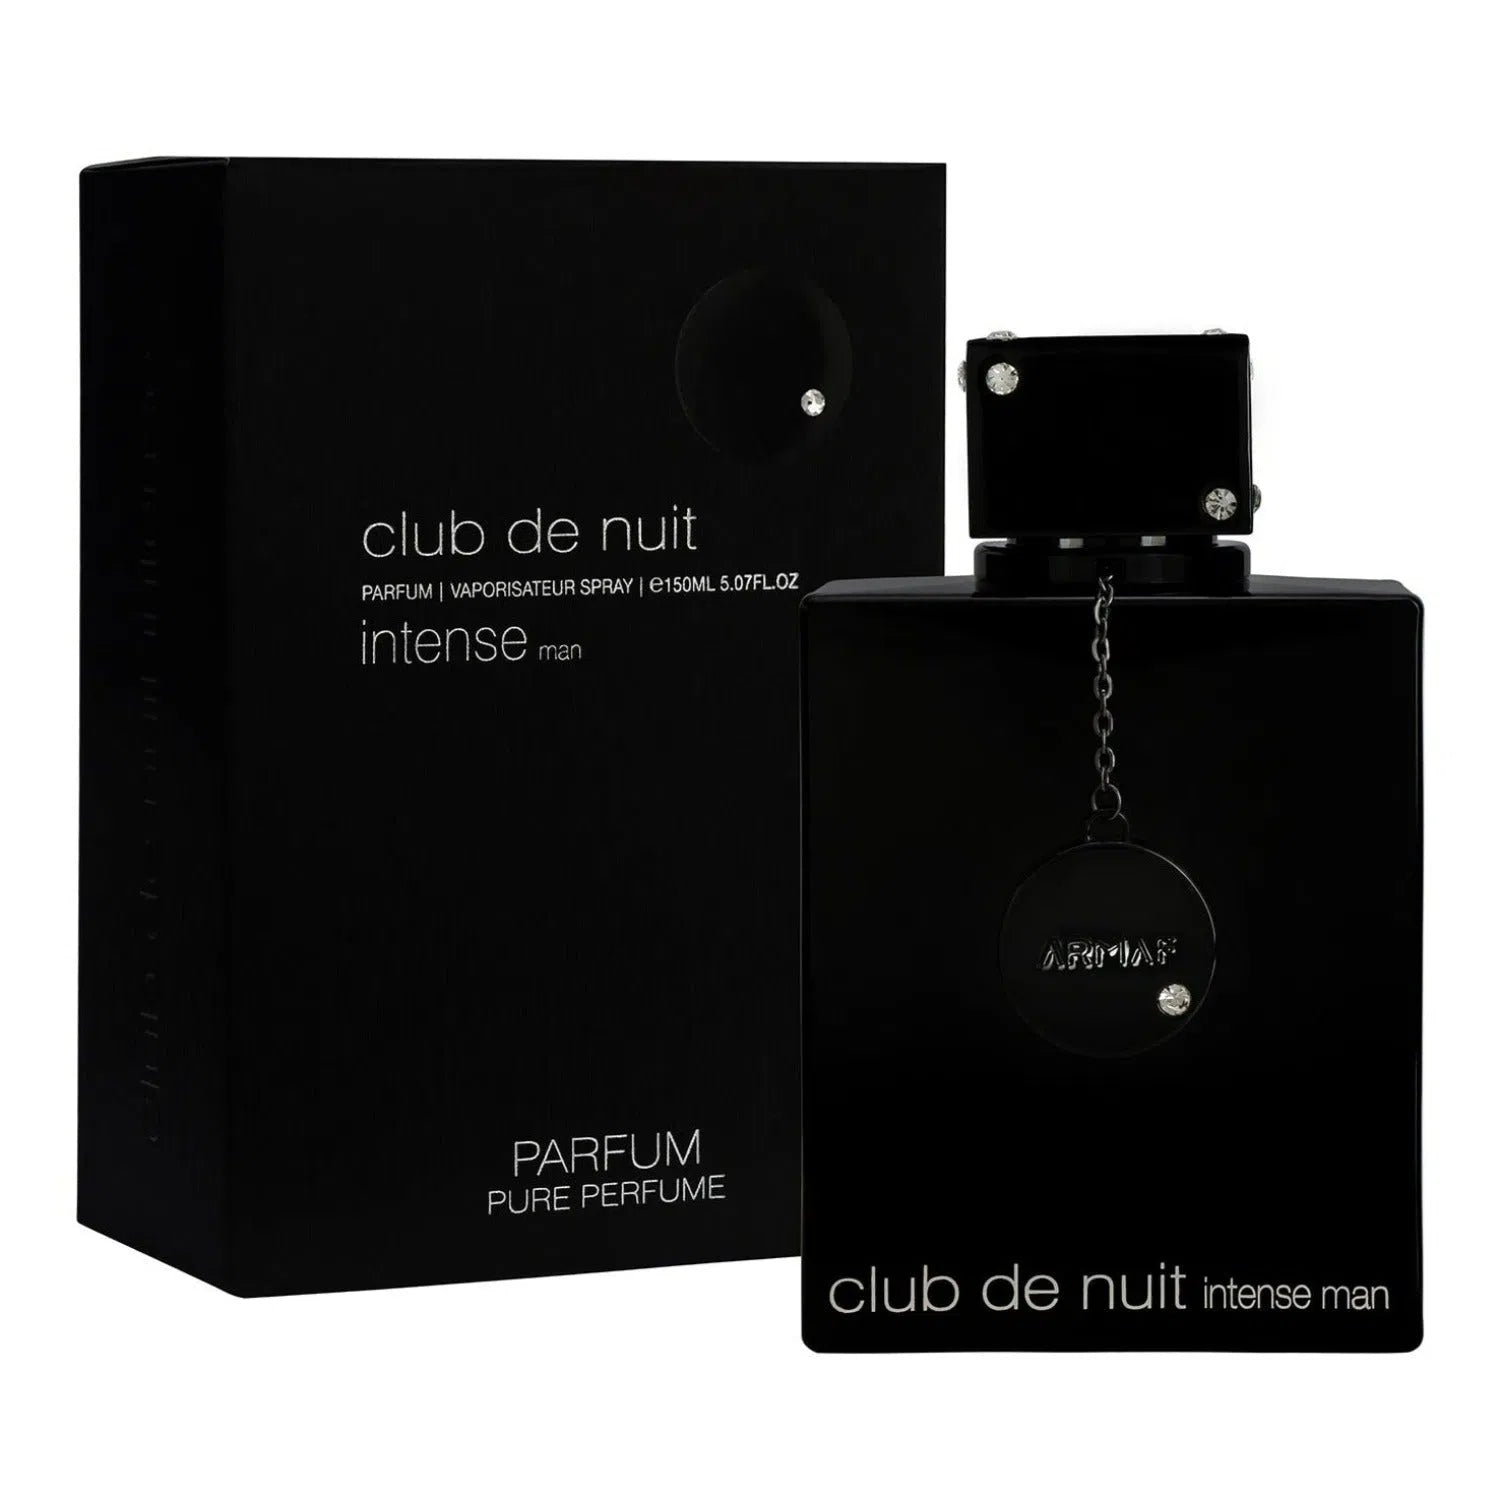 Perfume Armaf Club de Nuit Intense Parfum (M) / 150 ml - 6294015131017- Prive Perfumes Honduras